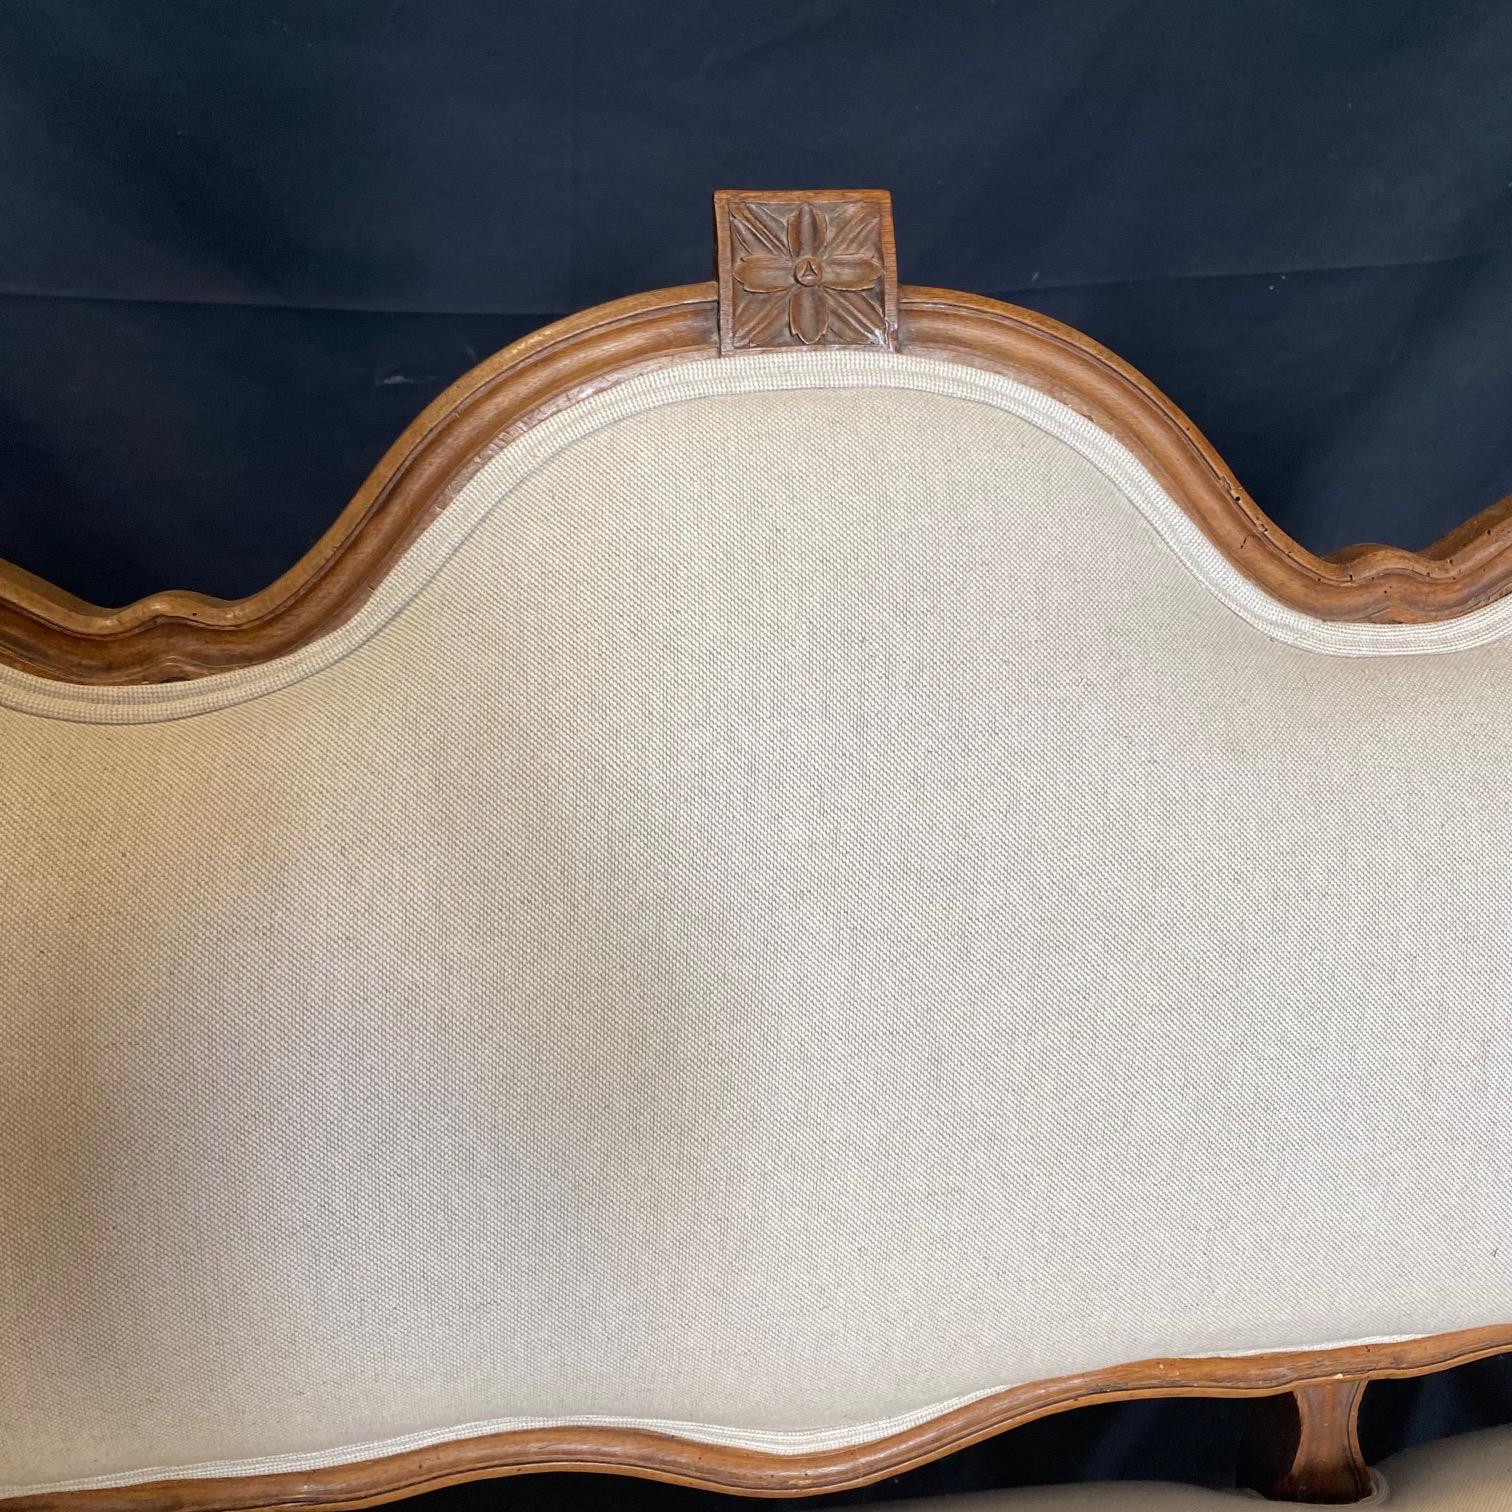 Ein französisches Sofa aus der Zeit Ludwigs XVI. mit provenzalischen Schnitzereien aus dem späten 19. Jahrhundert, mit neuer Polsterung, schönen kannelierten Beinen und exquisiten Schnitzereien. Dieses Sofa aus französischem Nussbaumholz, das in der